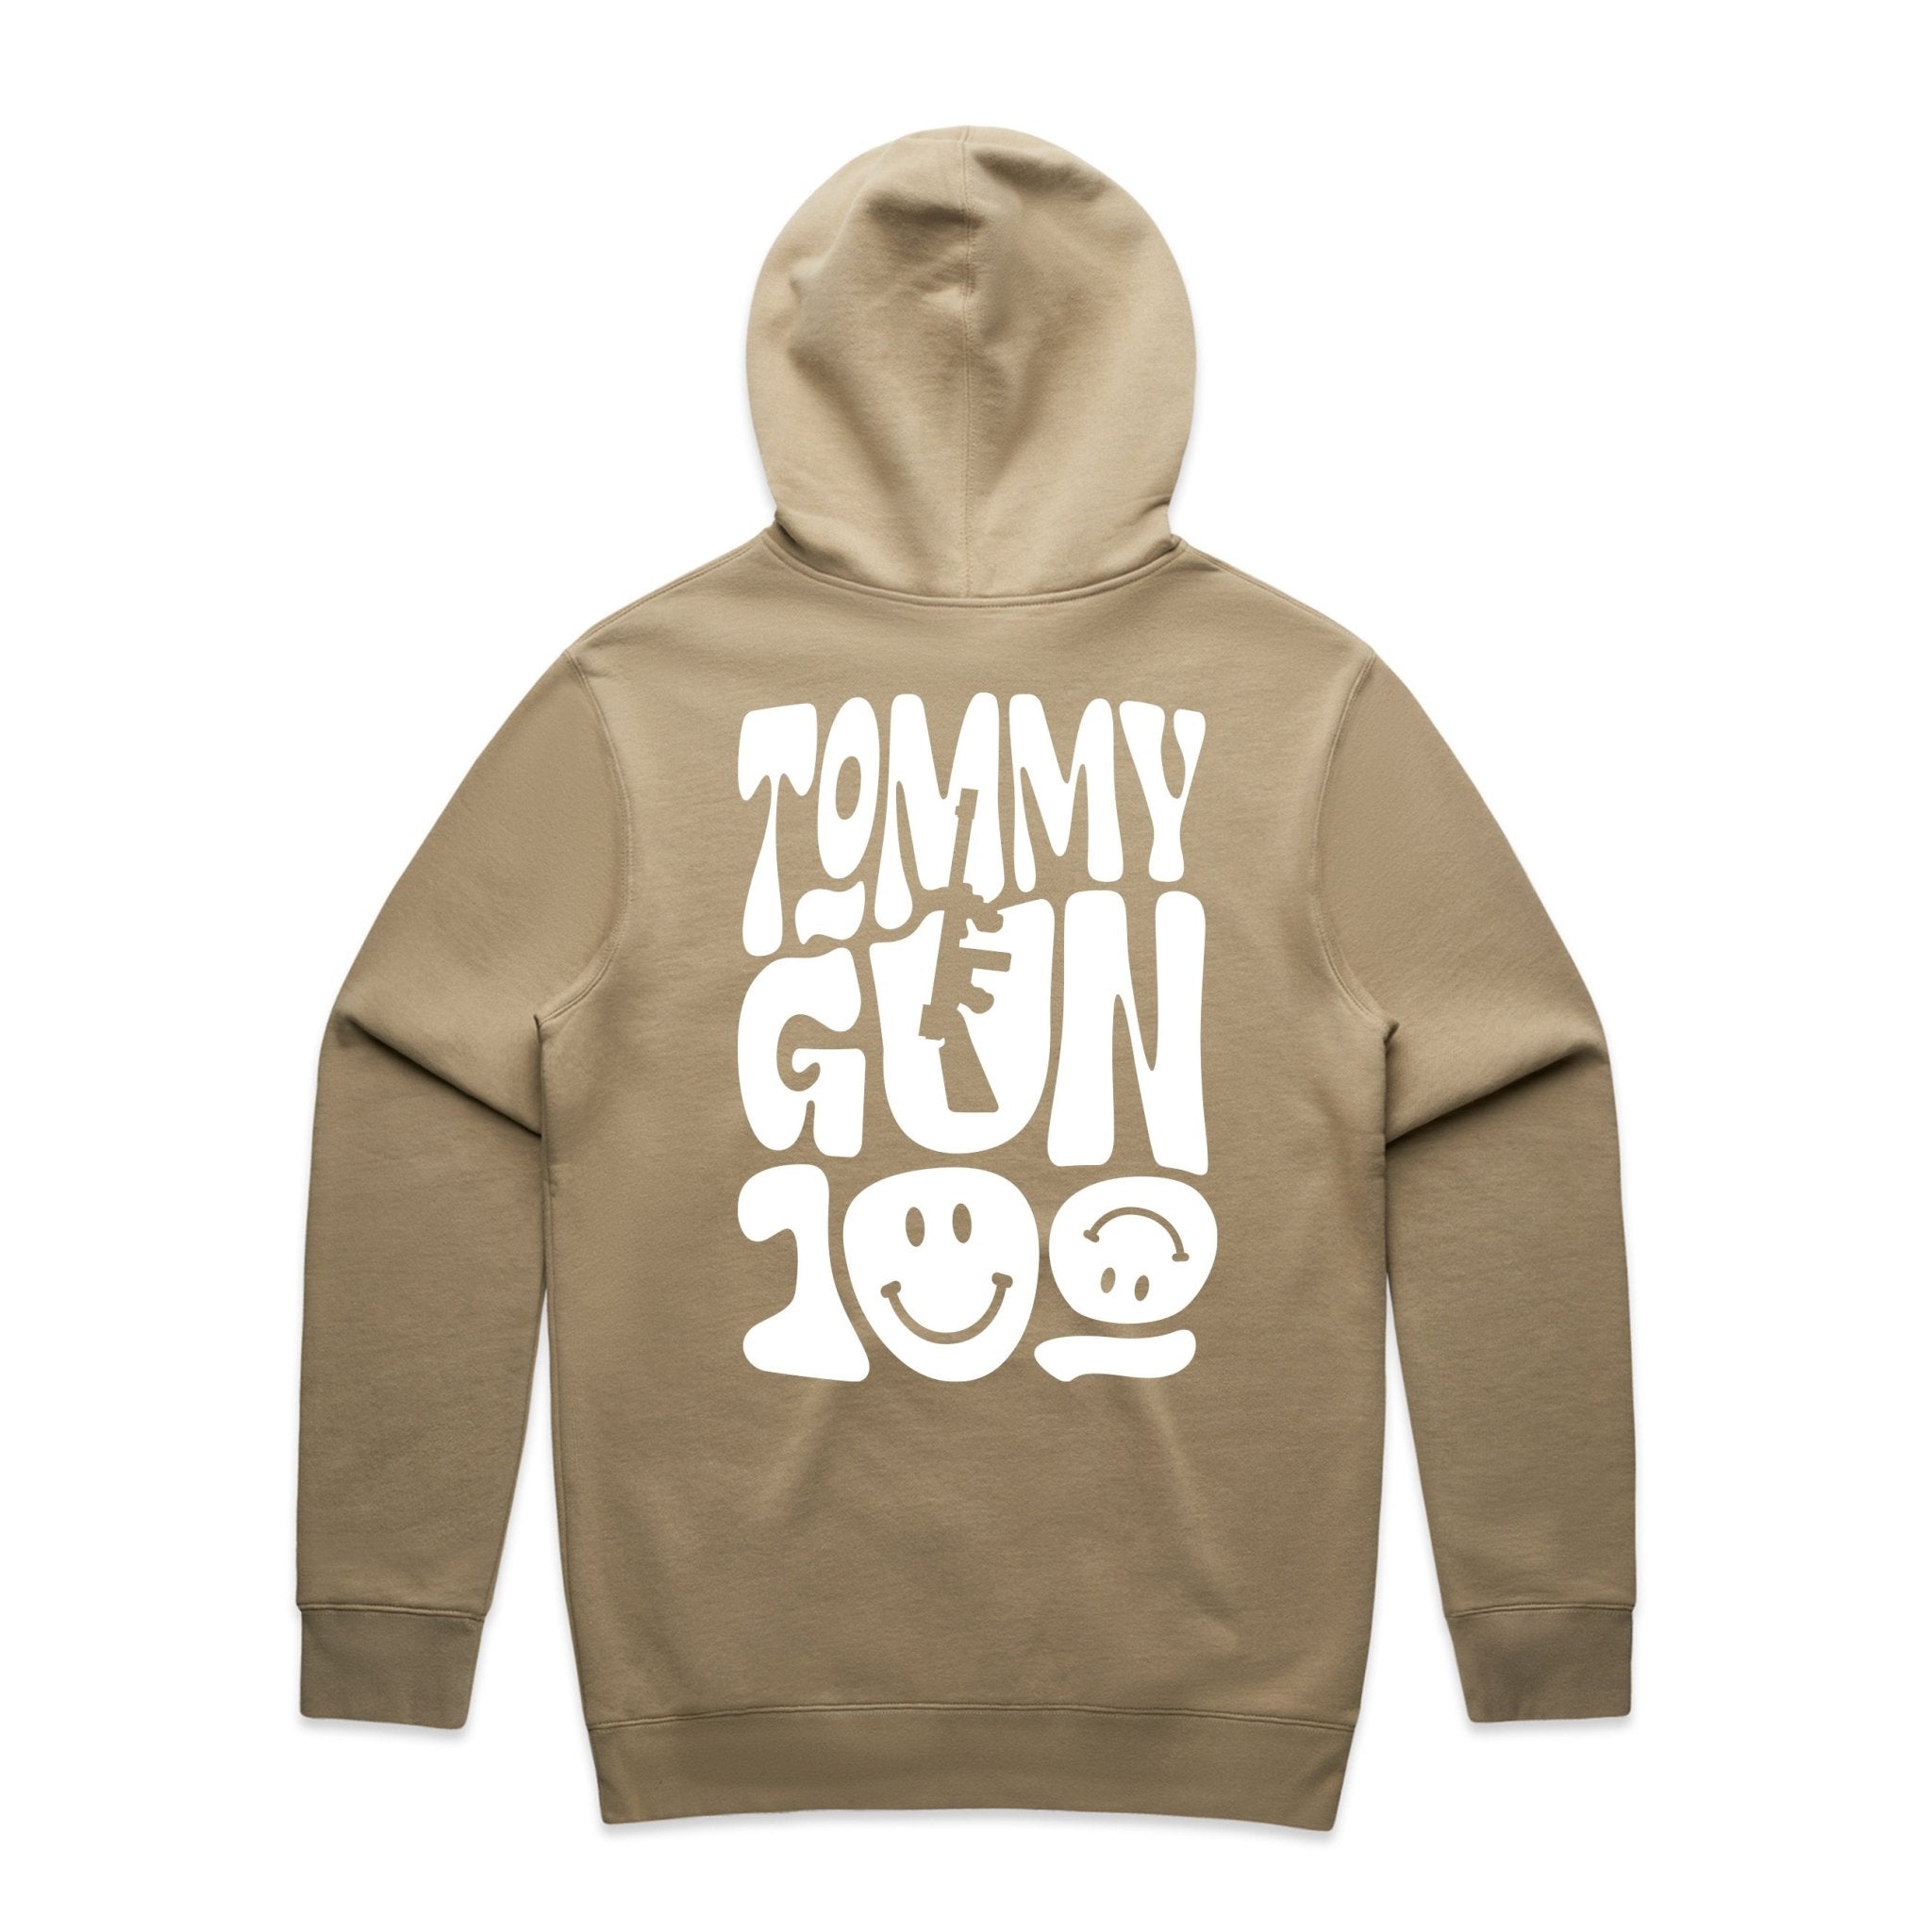 Tommy Gun Hoodie - Kecks